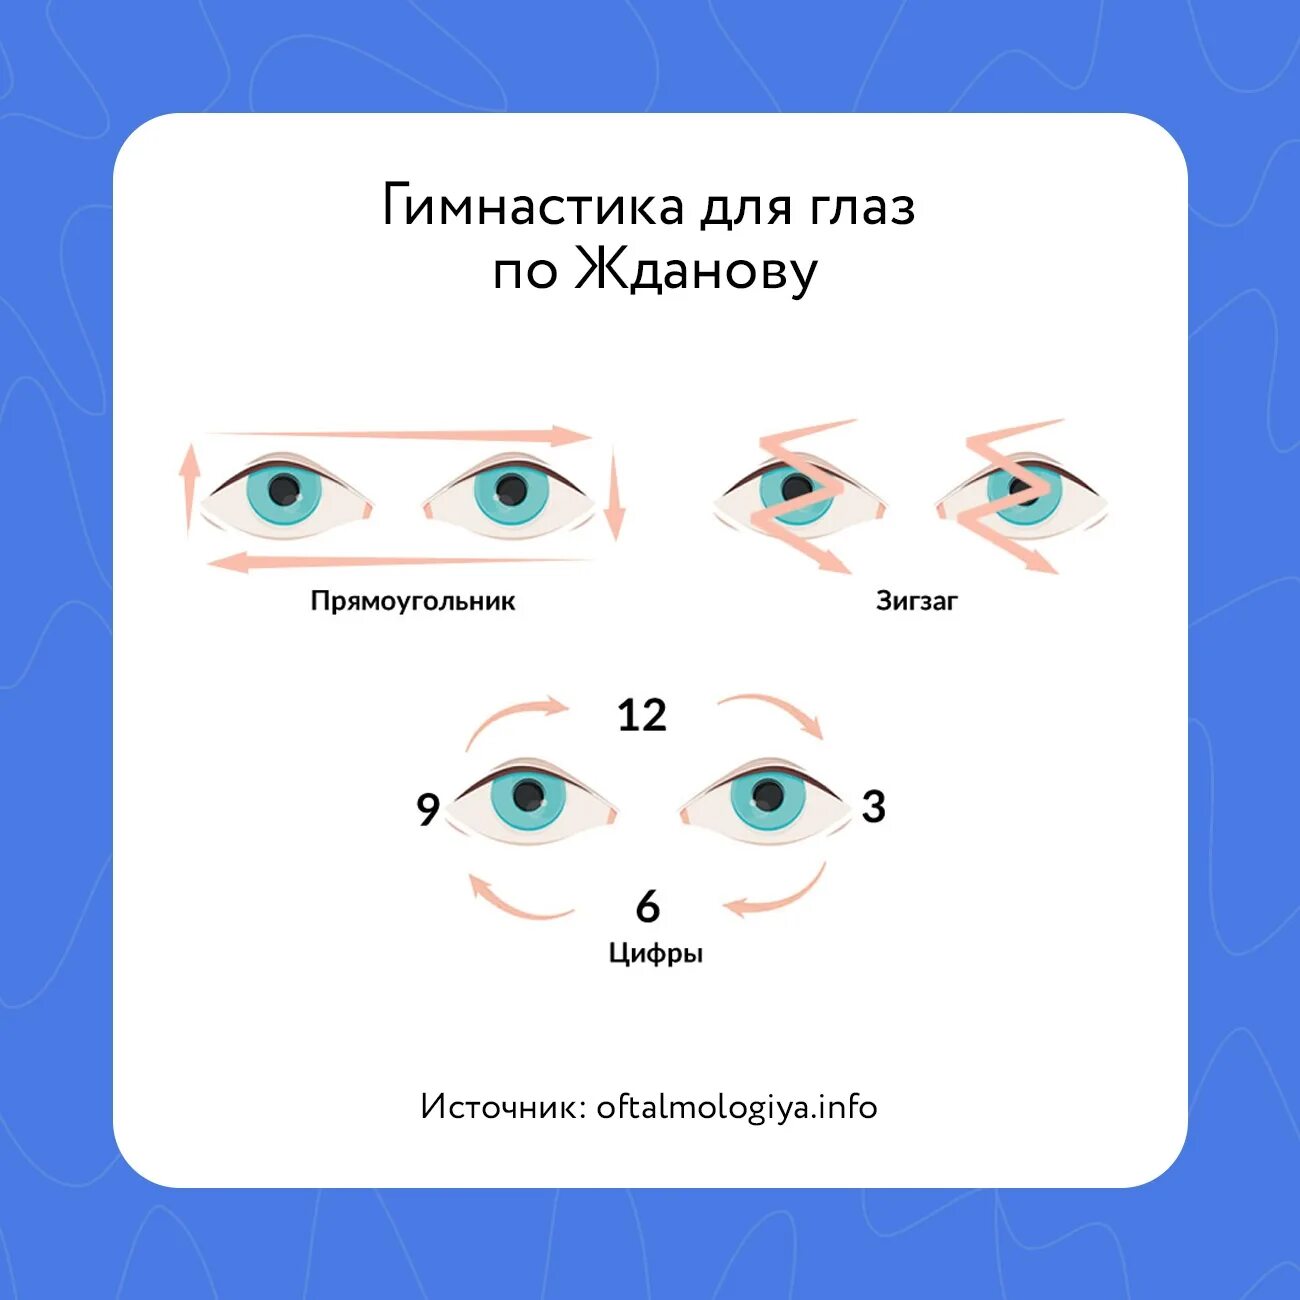 Помогай глазки. Гимнастика для глаз для улучшения зрения. Разминка для глаз. Инфографика гимнастика для глаз. Физкультура для глаз для улучшения зрения.